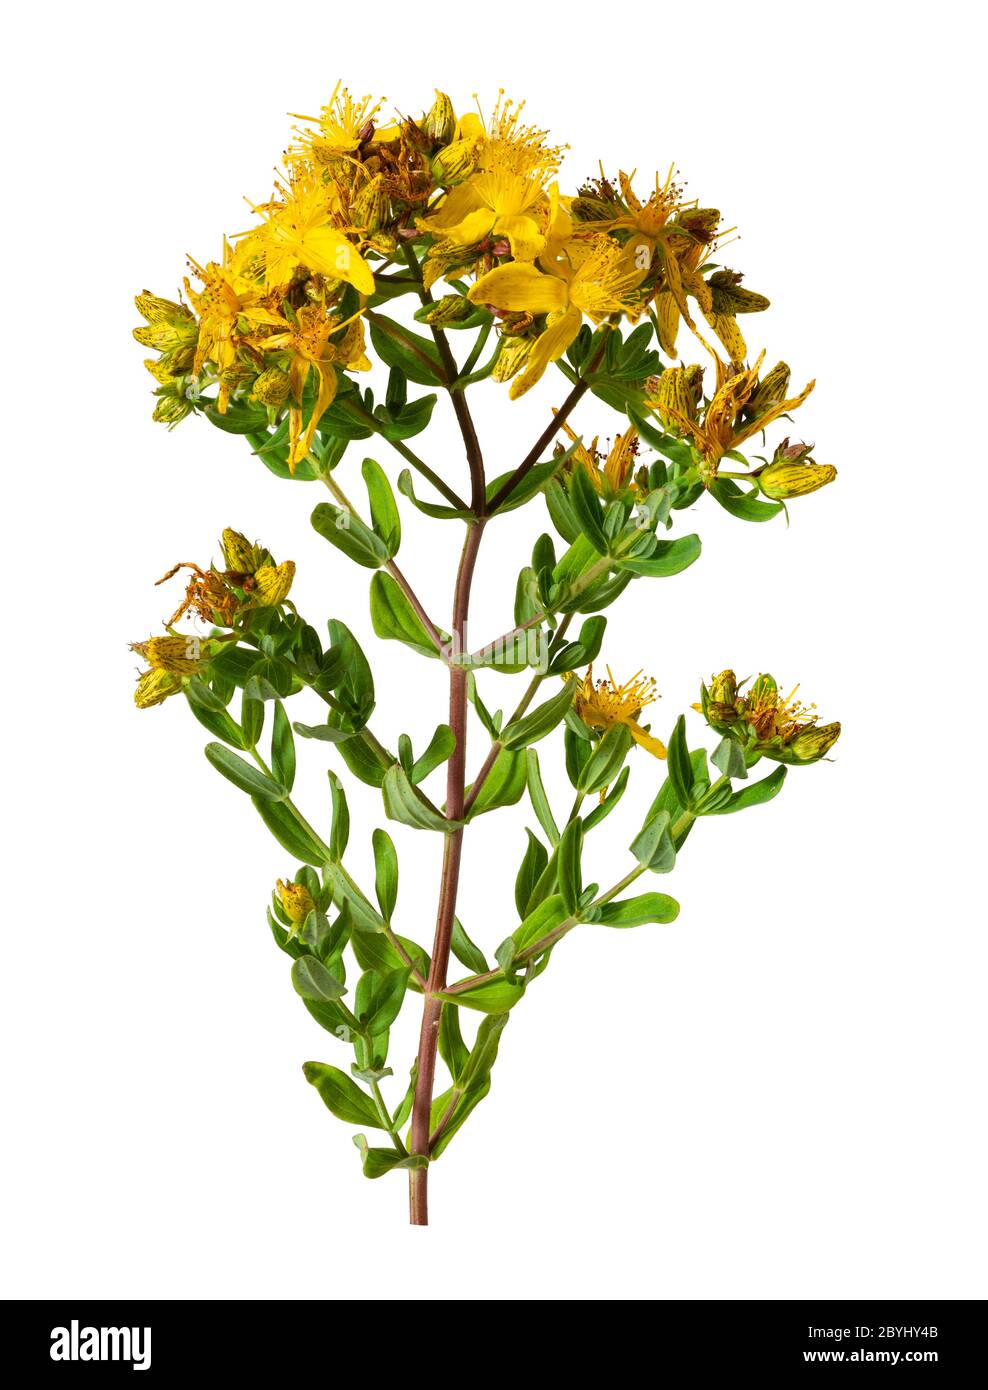 Gelbe, Frühsommerblüten der britischen Wildblume Hypericum perforatum, perforieren Johanniskraut, ein pflanzliches Heilmittel auf weißem Hintergrund Stockfoto